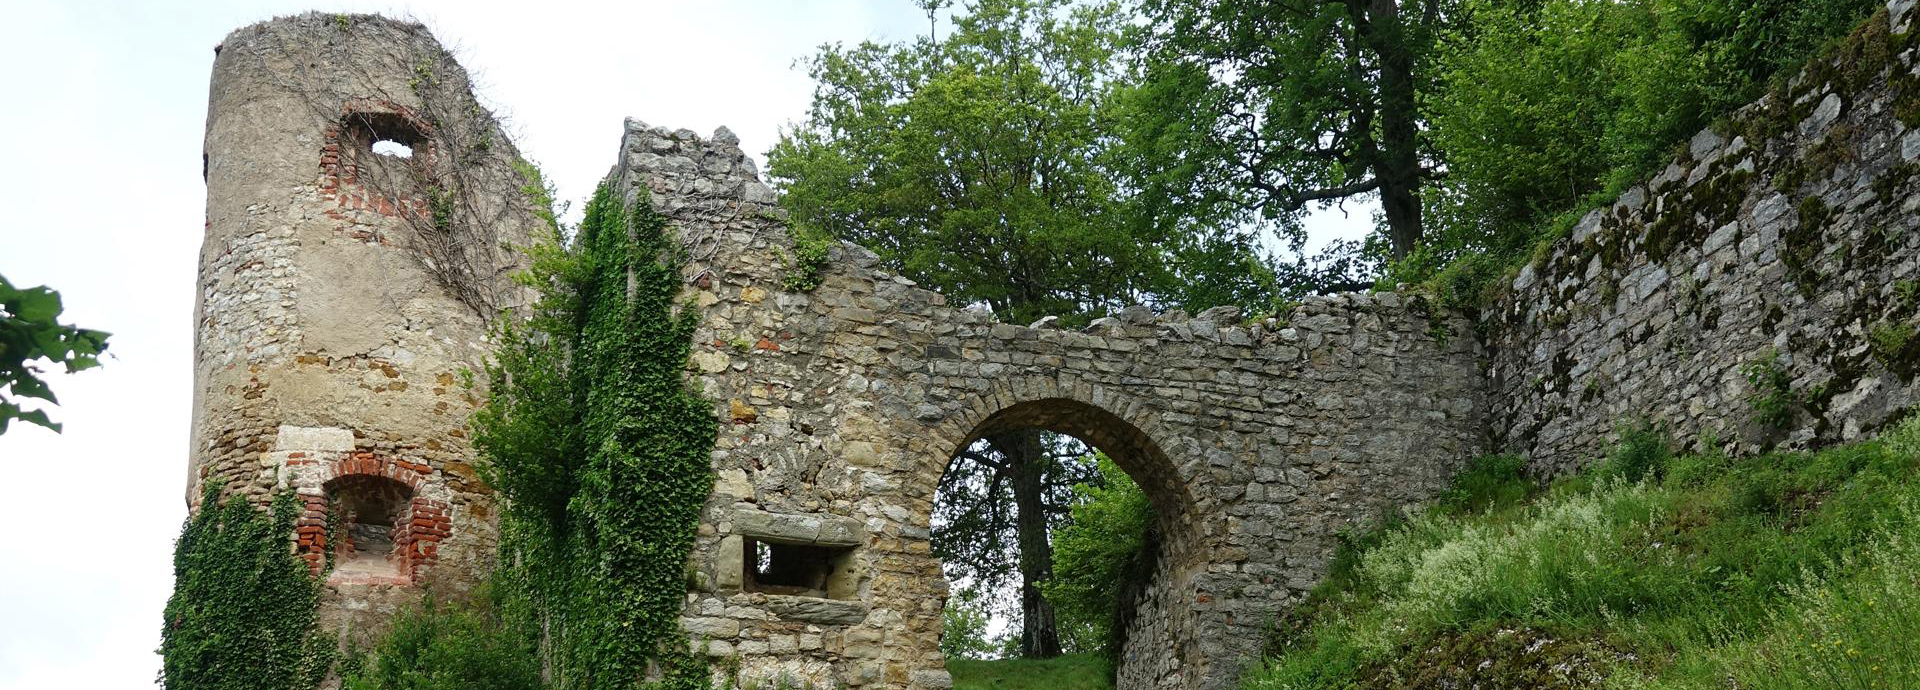 Château de Ferrette in de Elzas, een bevoorrechte historische omgeving